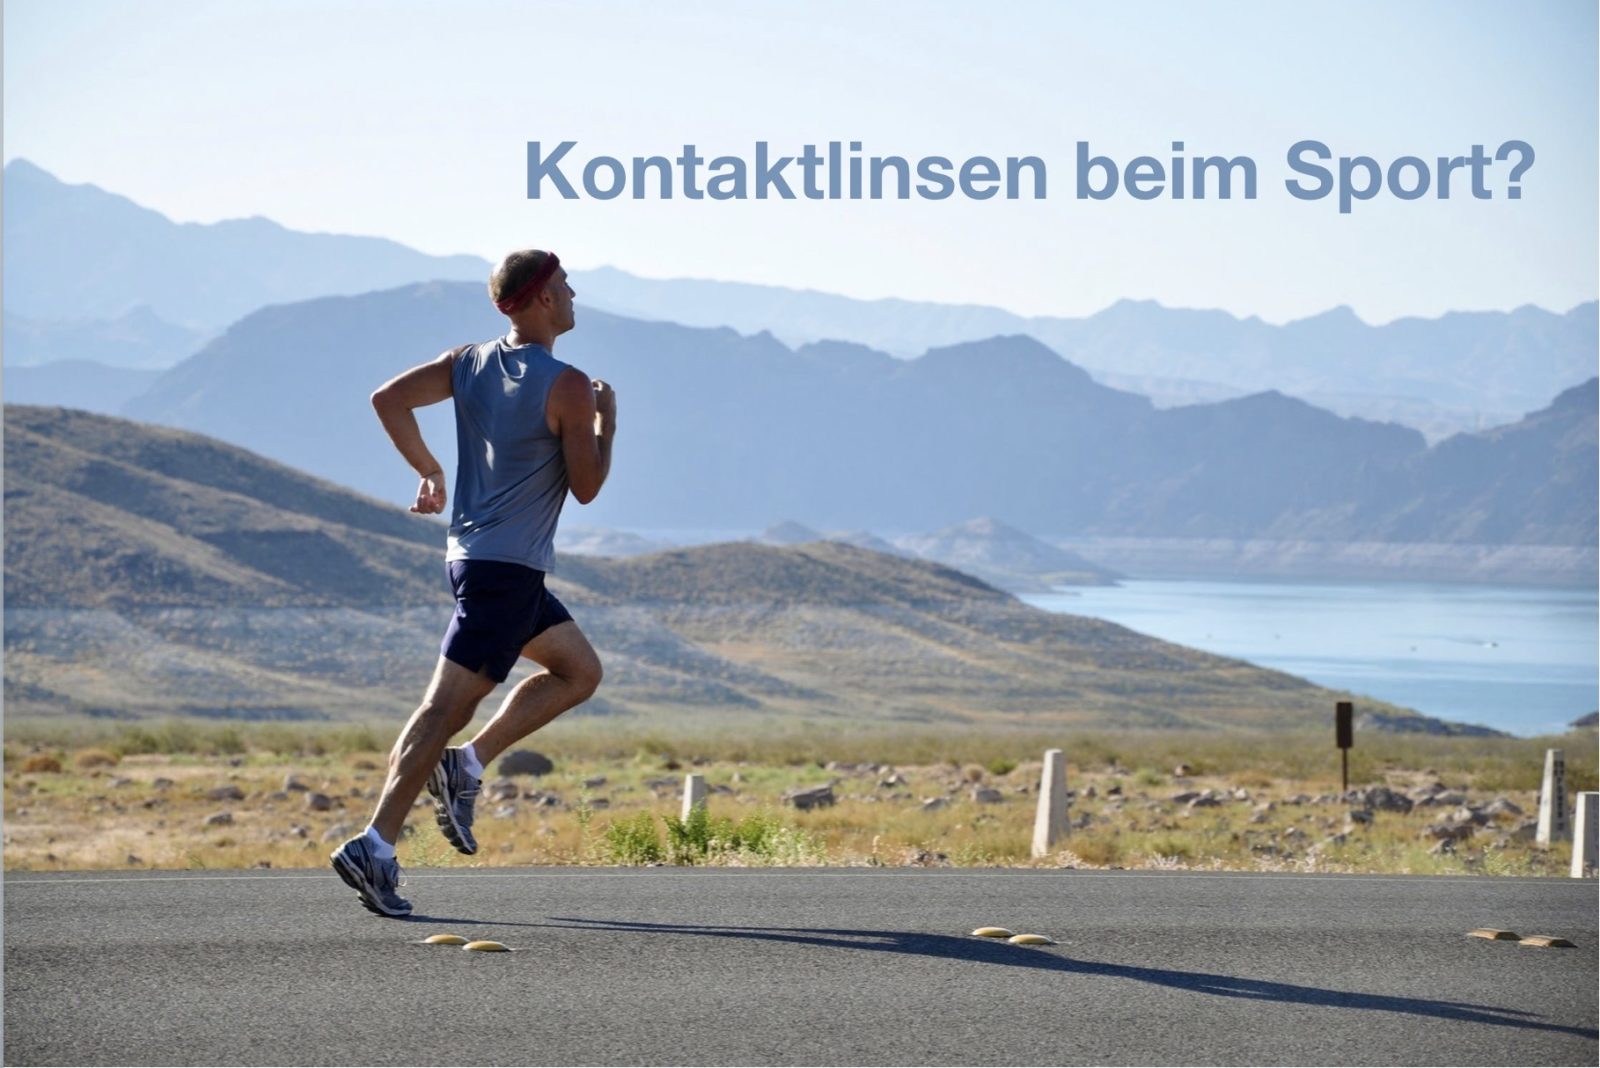 Das Bild zeigt einen Läufer. Es ist ein Text zu lesen mit den Worten "Welche Kontaktlinsen beim Sport"